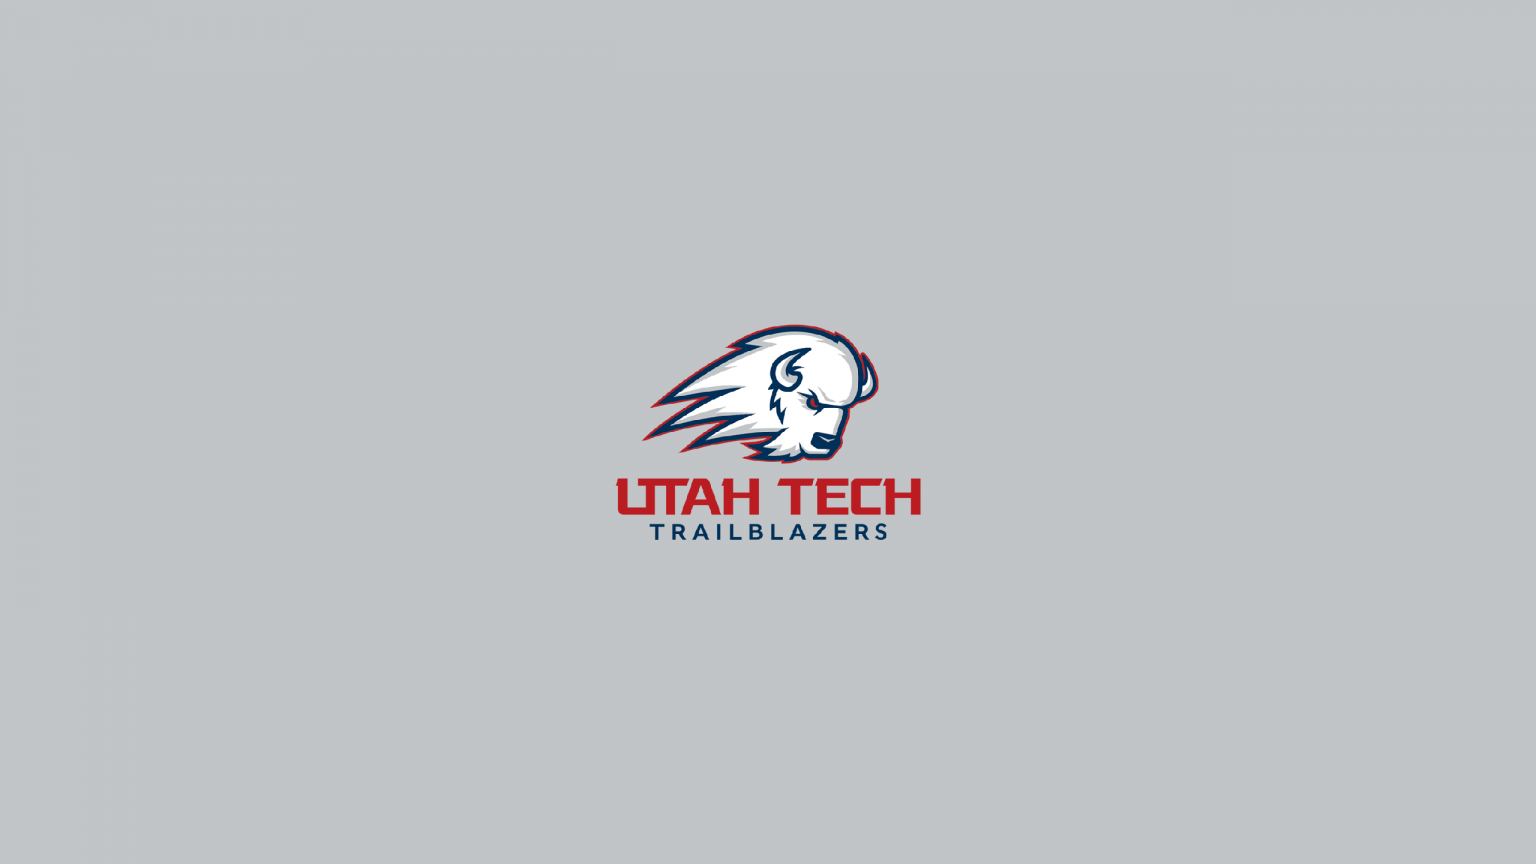 Utah Tech Trailblazers Basketball - NCAAB - Square Bettor